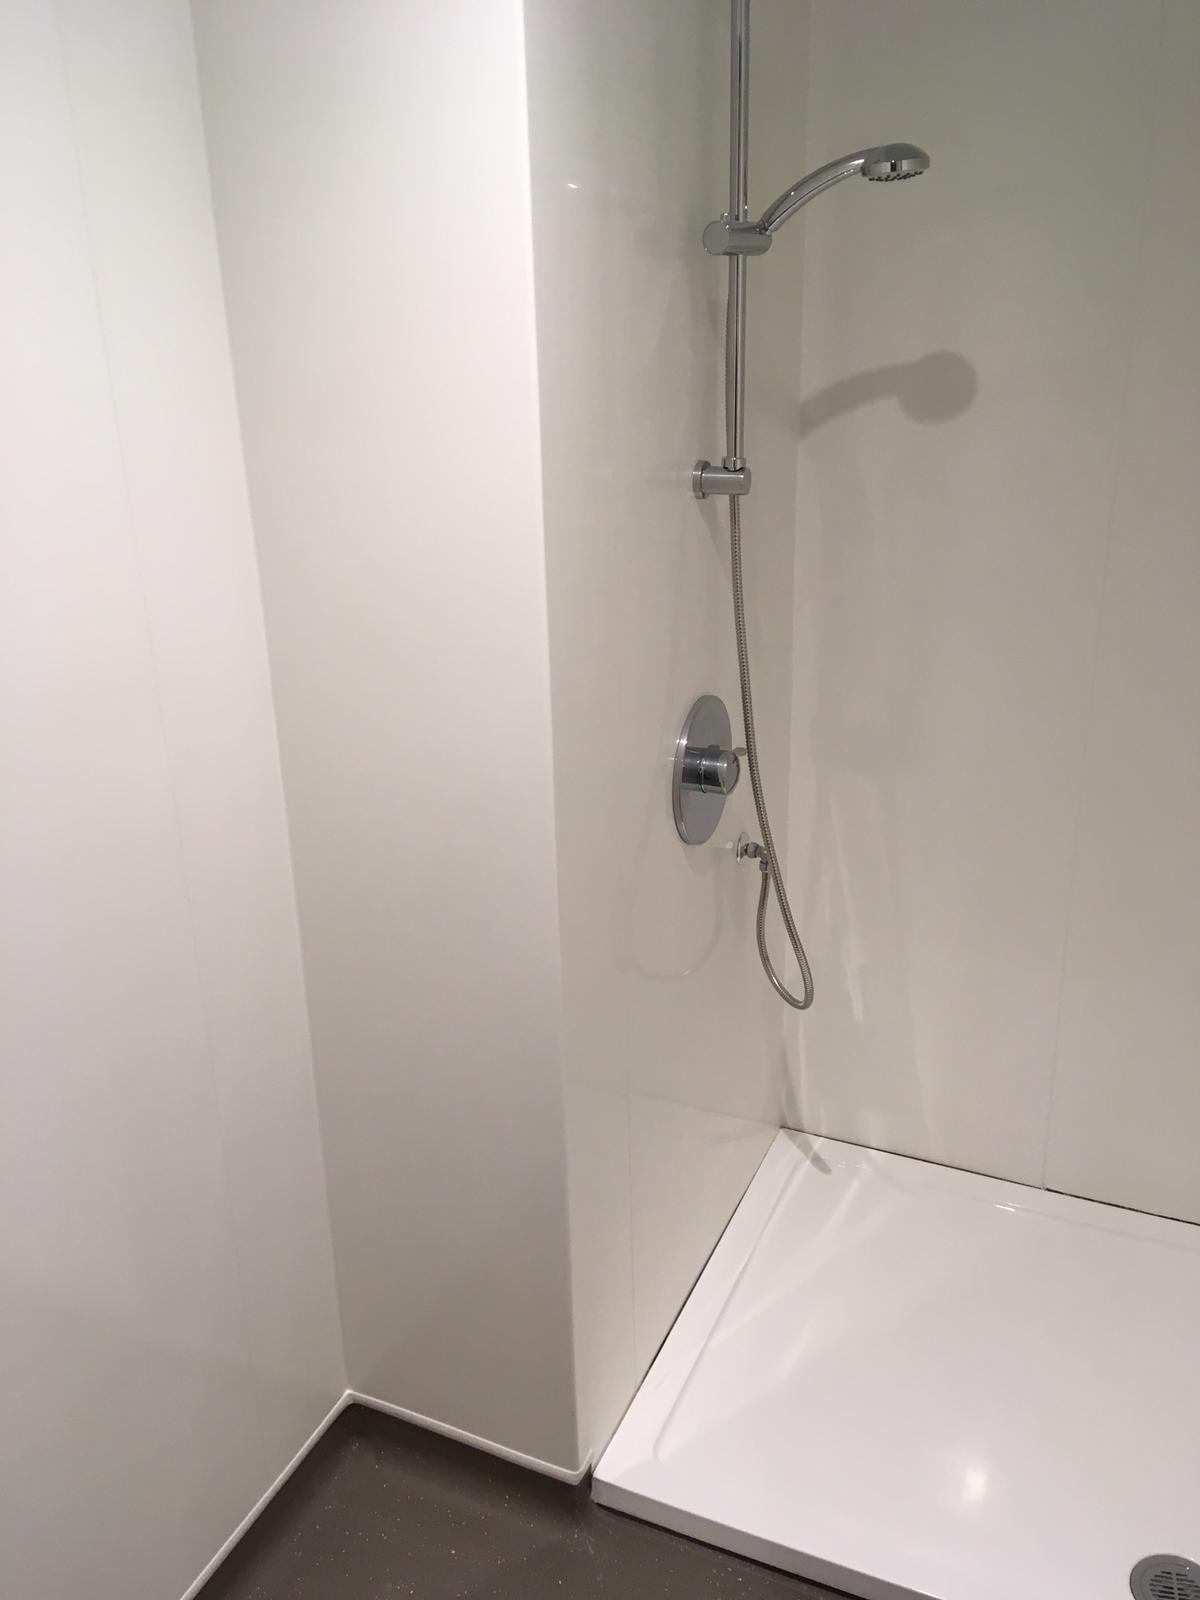 White rock shower panels